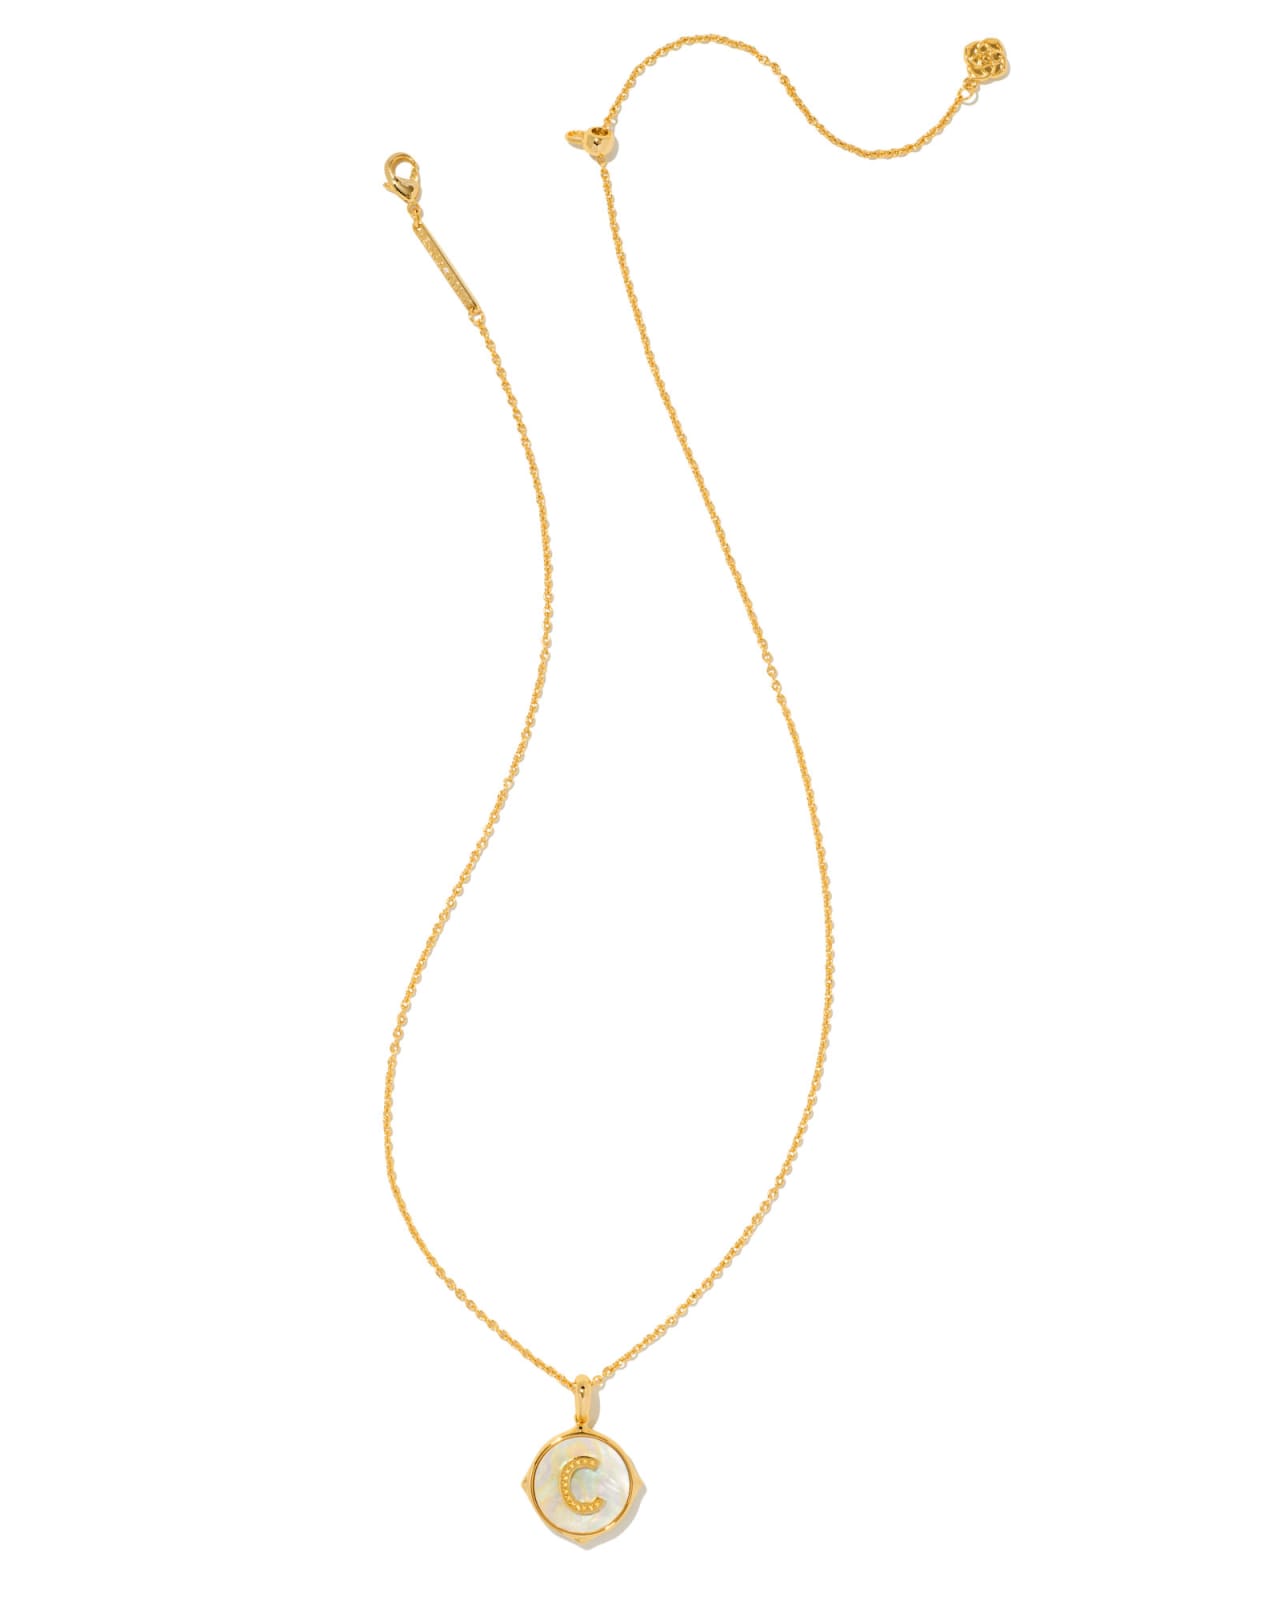 Kendra Scott: Letter C Pendant Necklace - Gold